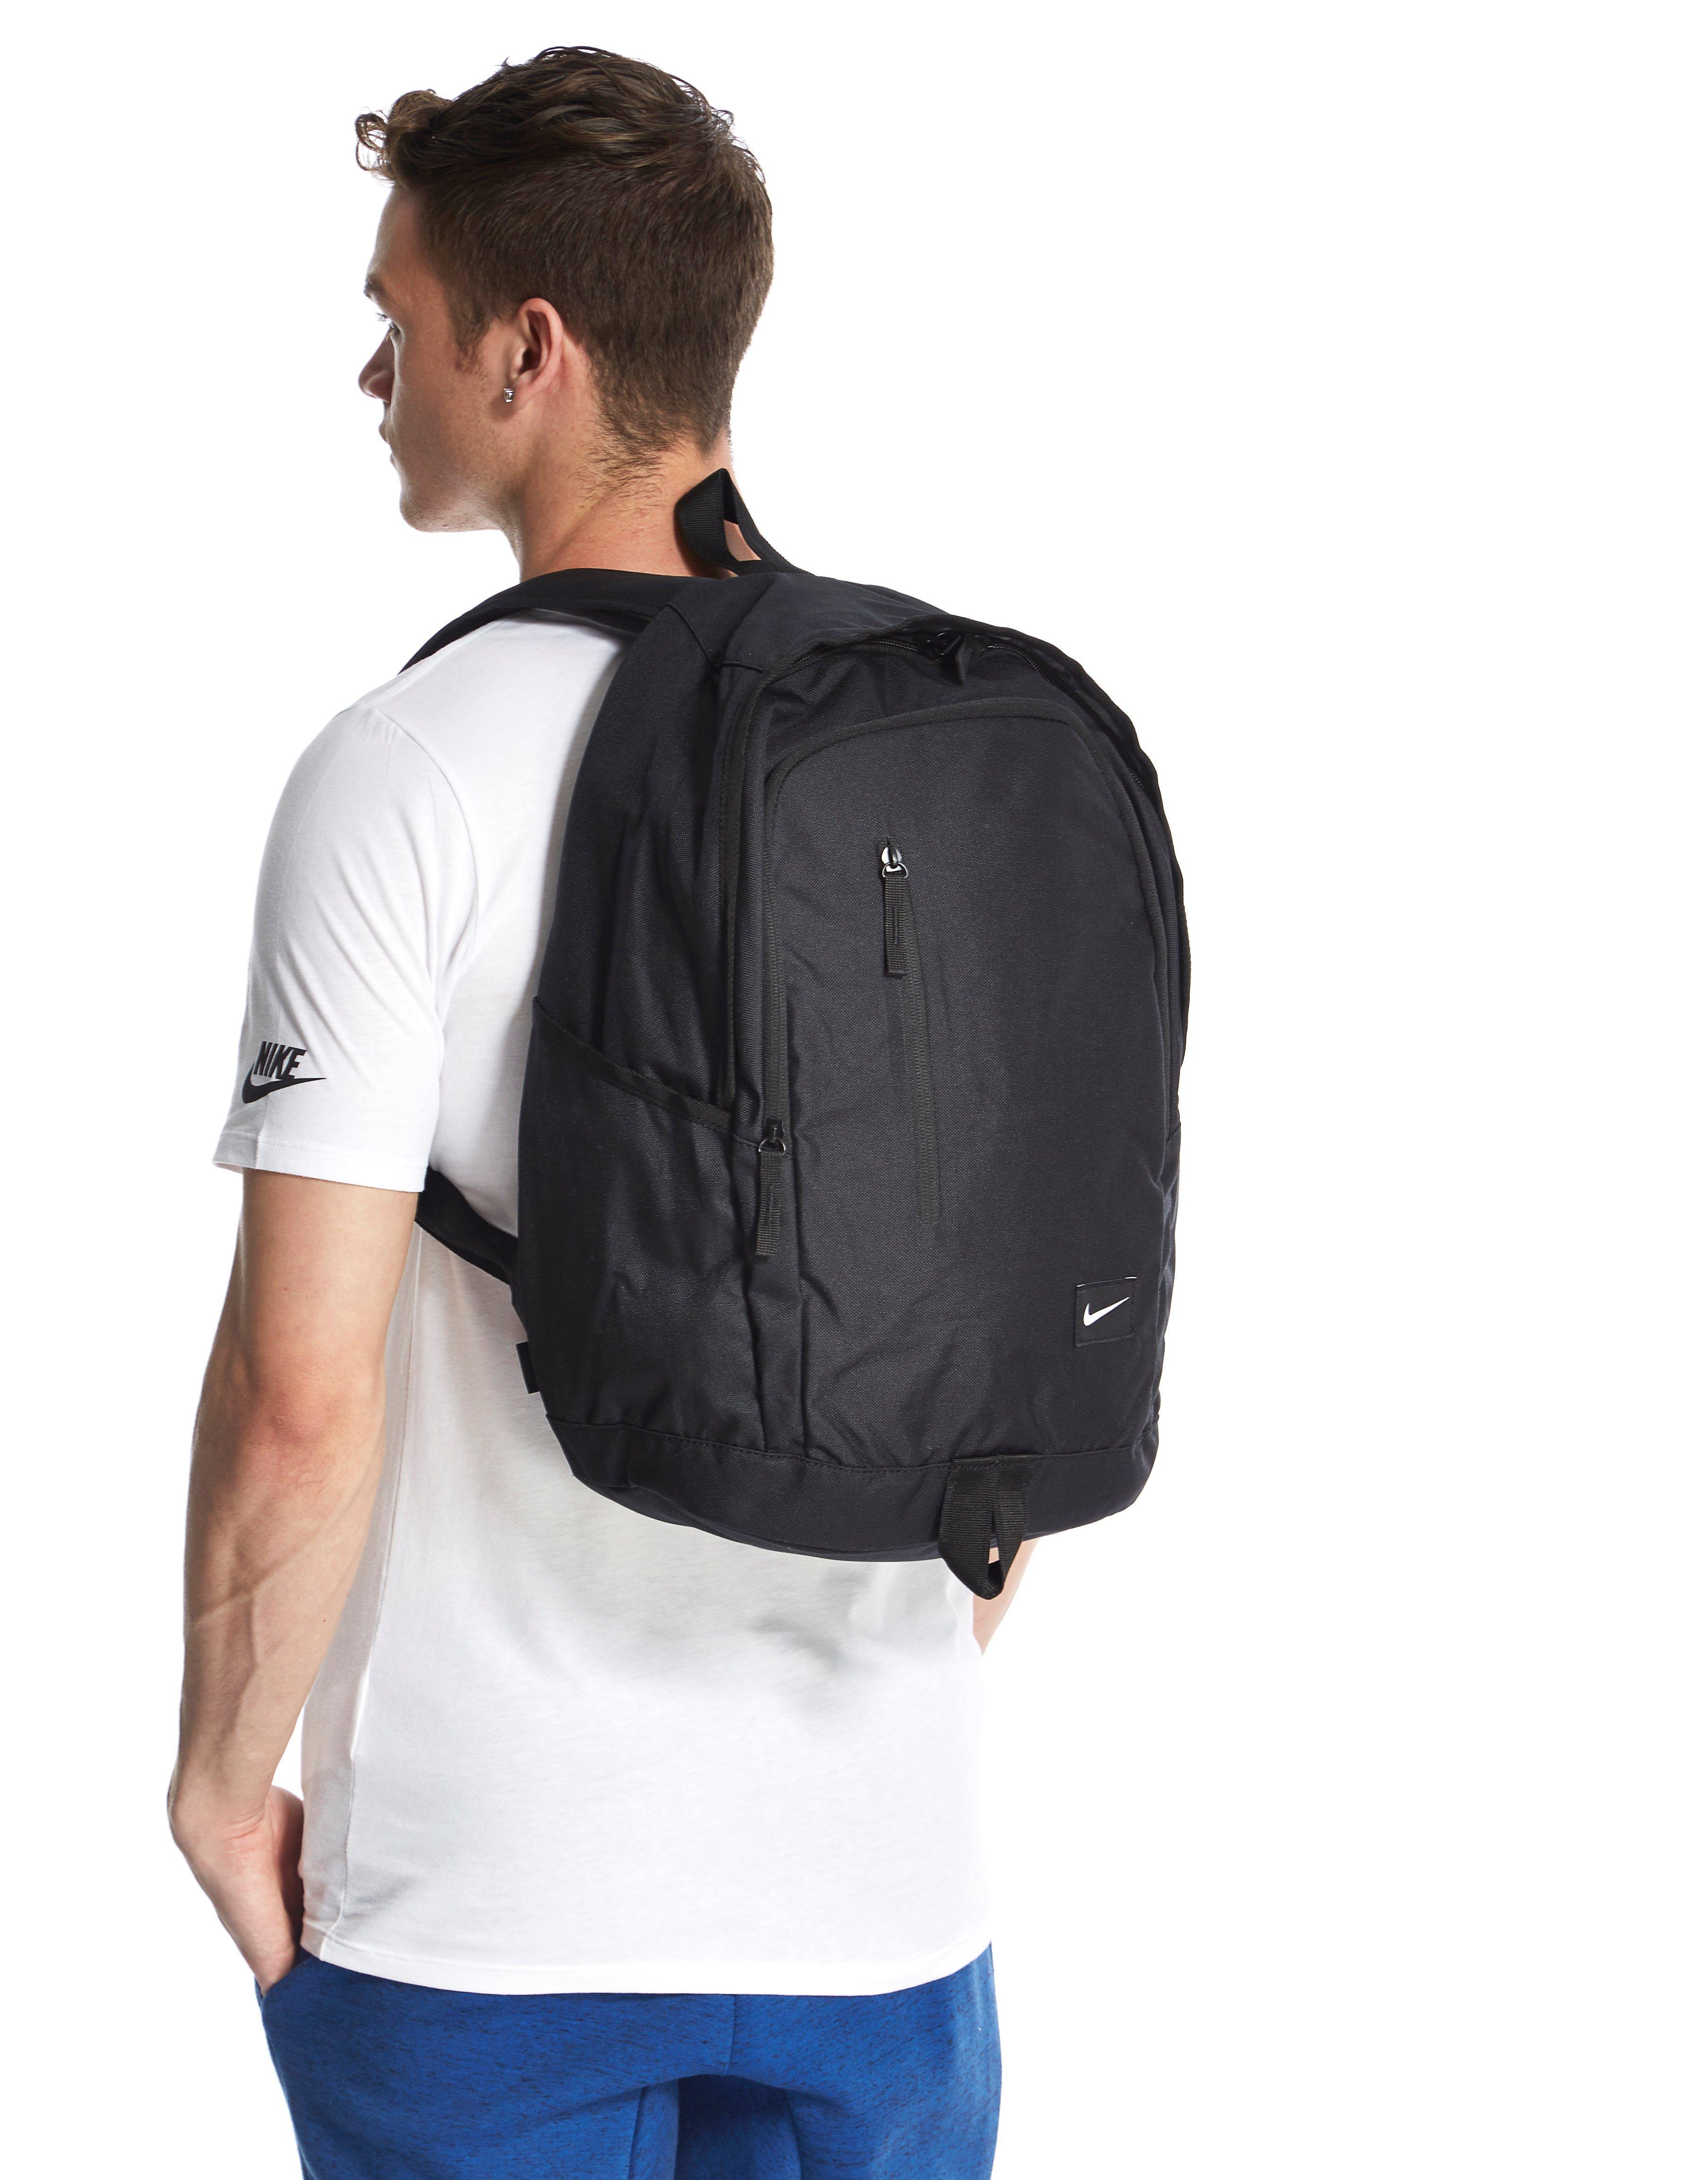 soleday backpack